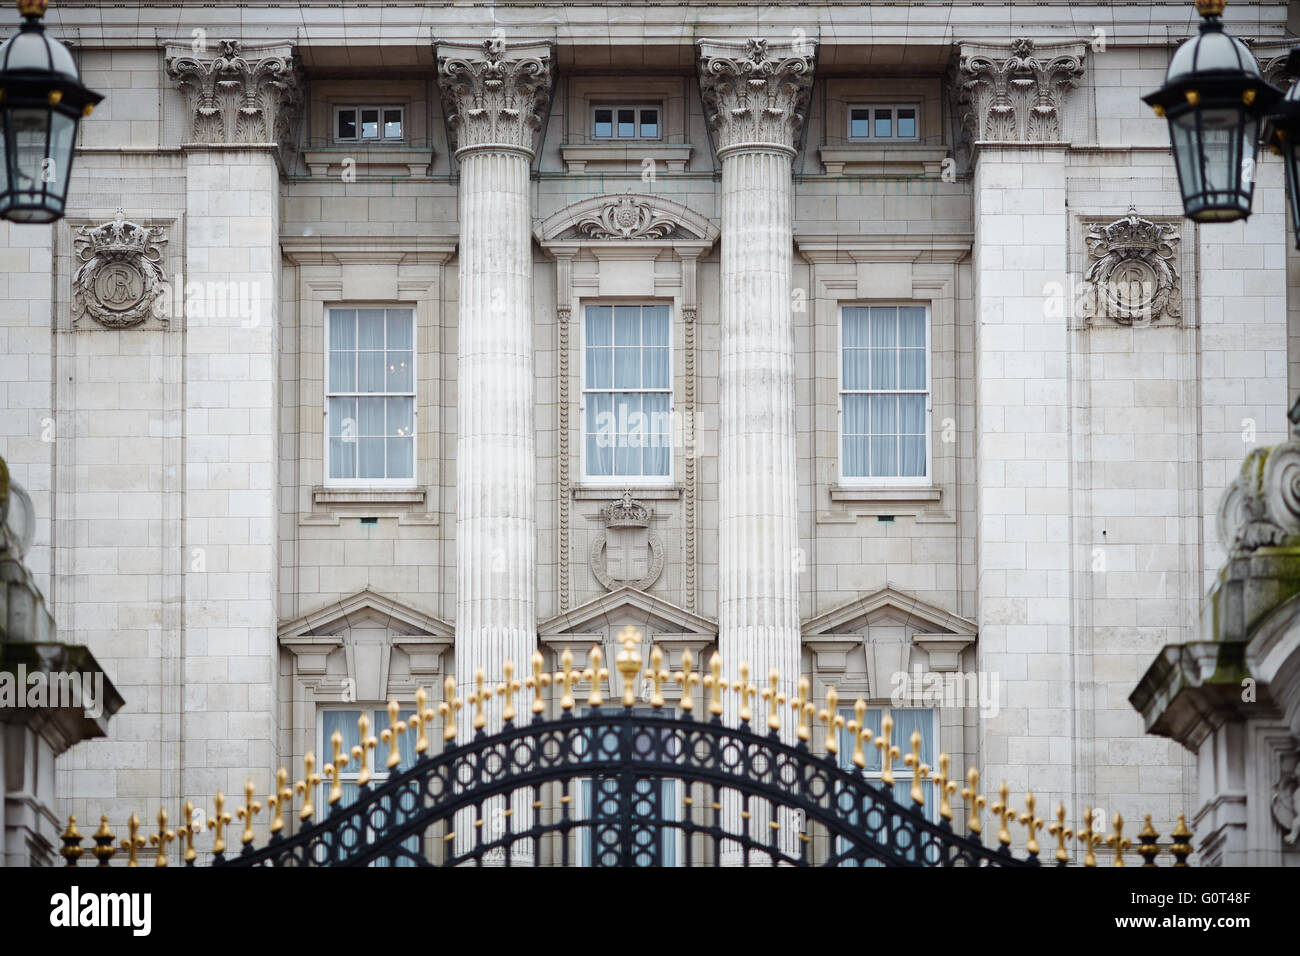 Au Palais de Buckingham Gate accueil de la Reine histoire historique en fer forgé de qualité important important de luxe de luxe et chic Banque D'Images